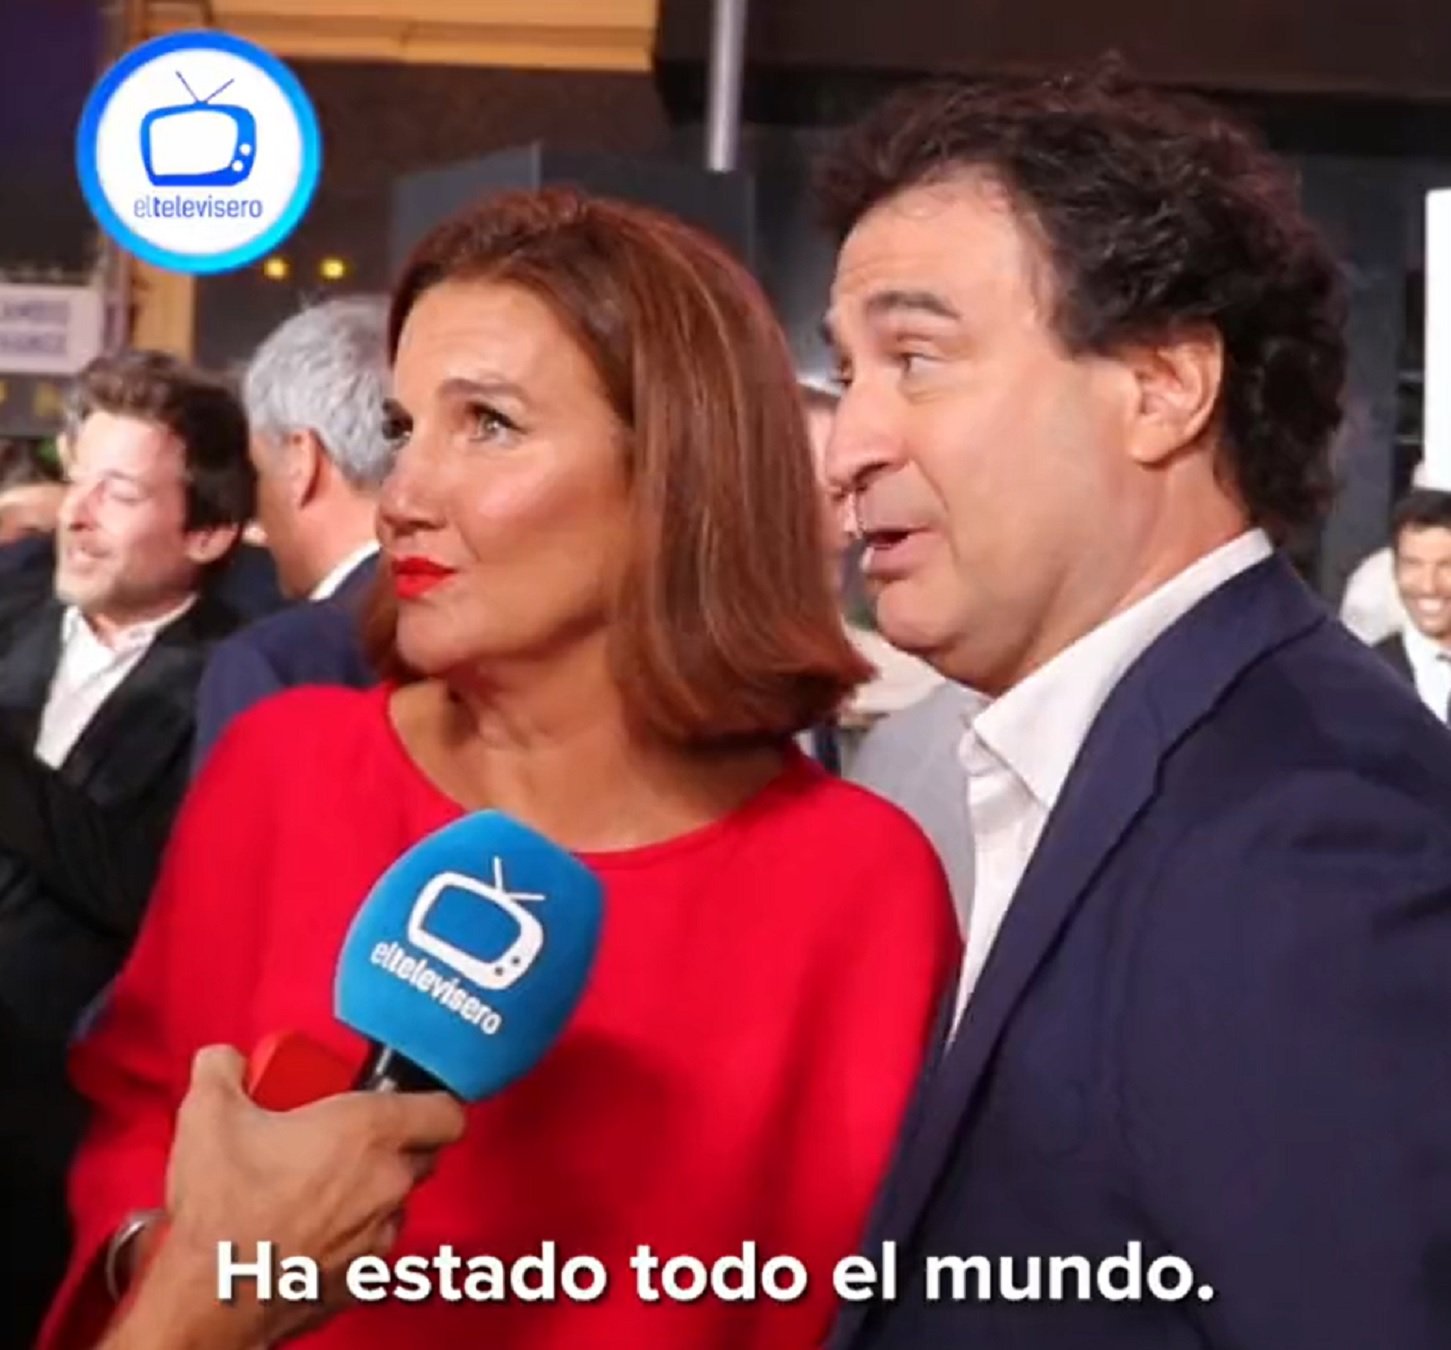 Pepe Rodríguez y Samantha se pronuncian sobre la presencia de Vox en 'Masterchef'